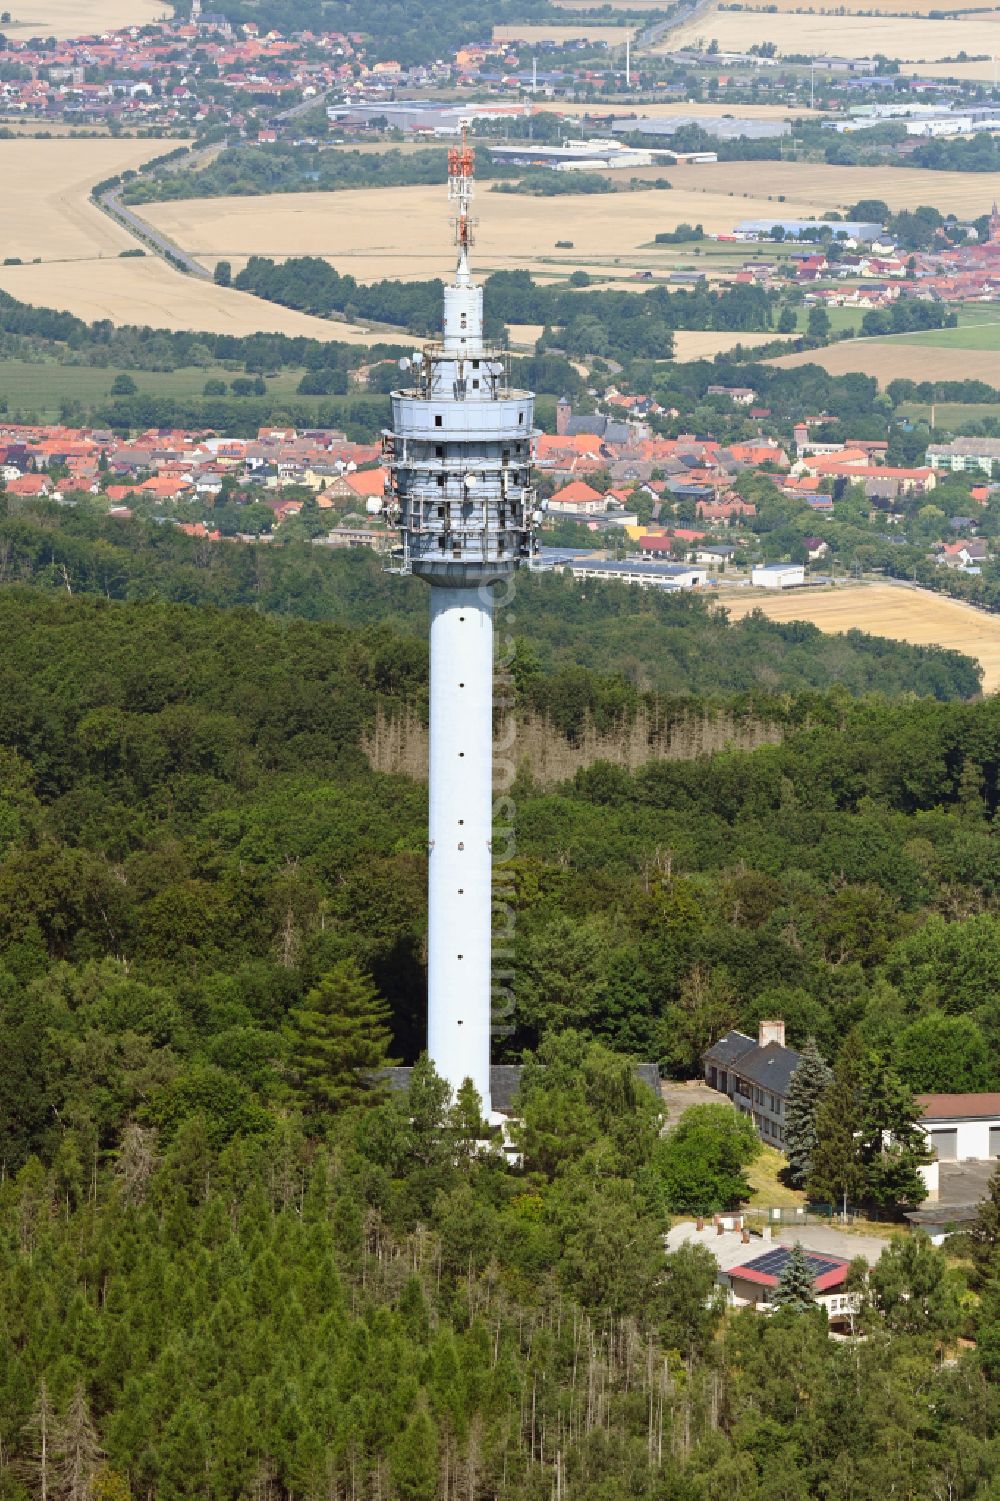 Steinthaleben aus der Vogelperspektive: Fernmeldeturm und Fernsehturm in Steinthaleben im Bundesland Thüringen, Deutschland